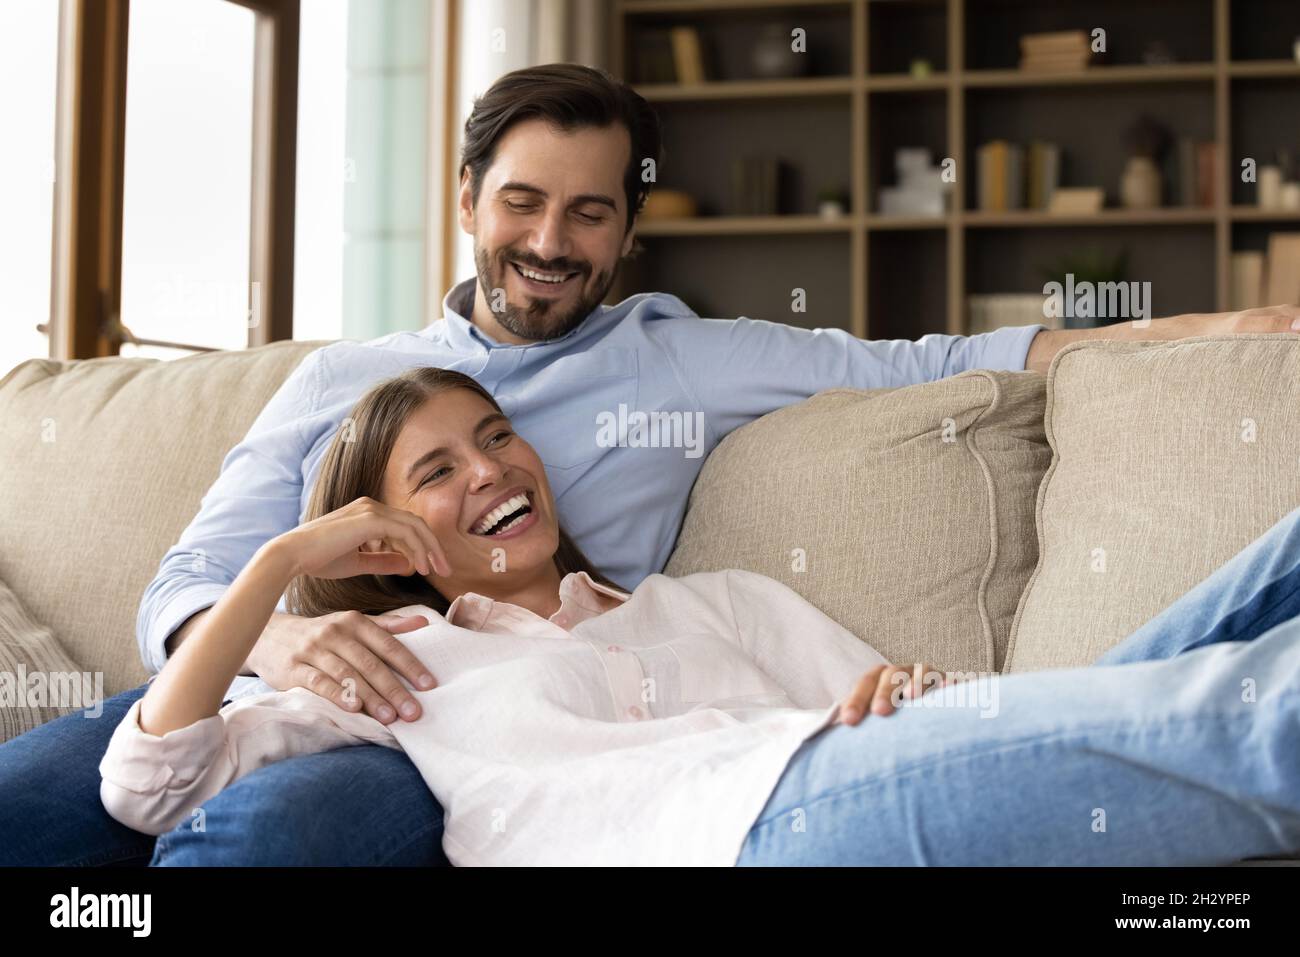 Glückliches junges Paar, das sich auf dem gemütlichen Sofa entspannt. Stockfoto